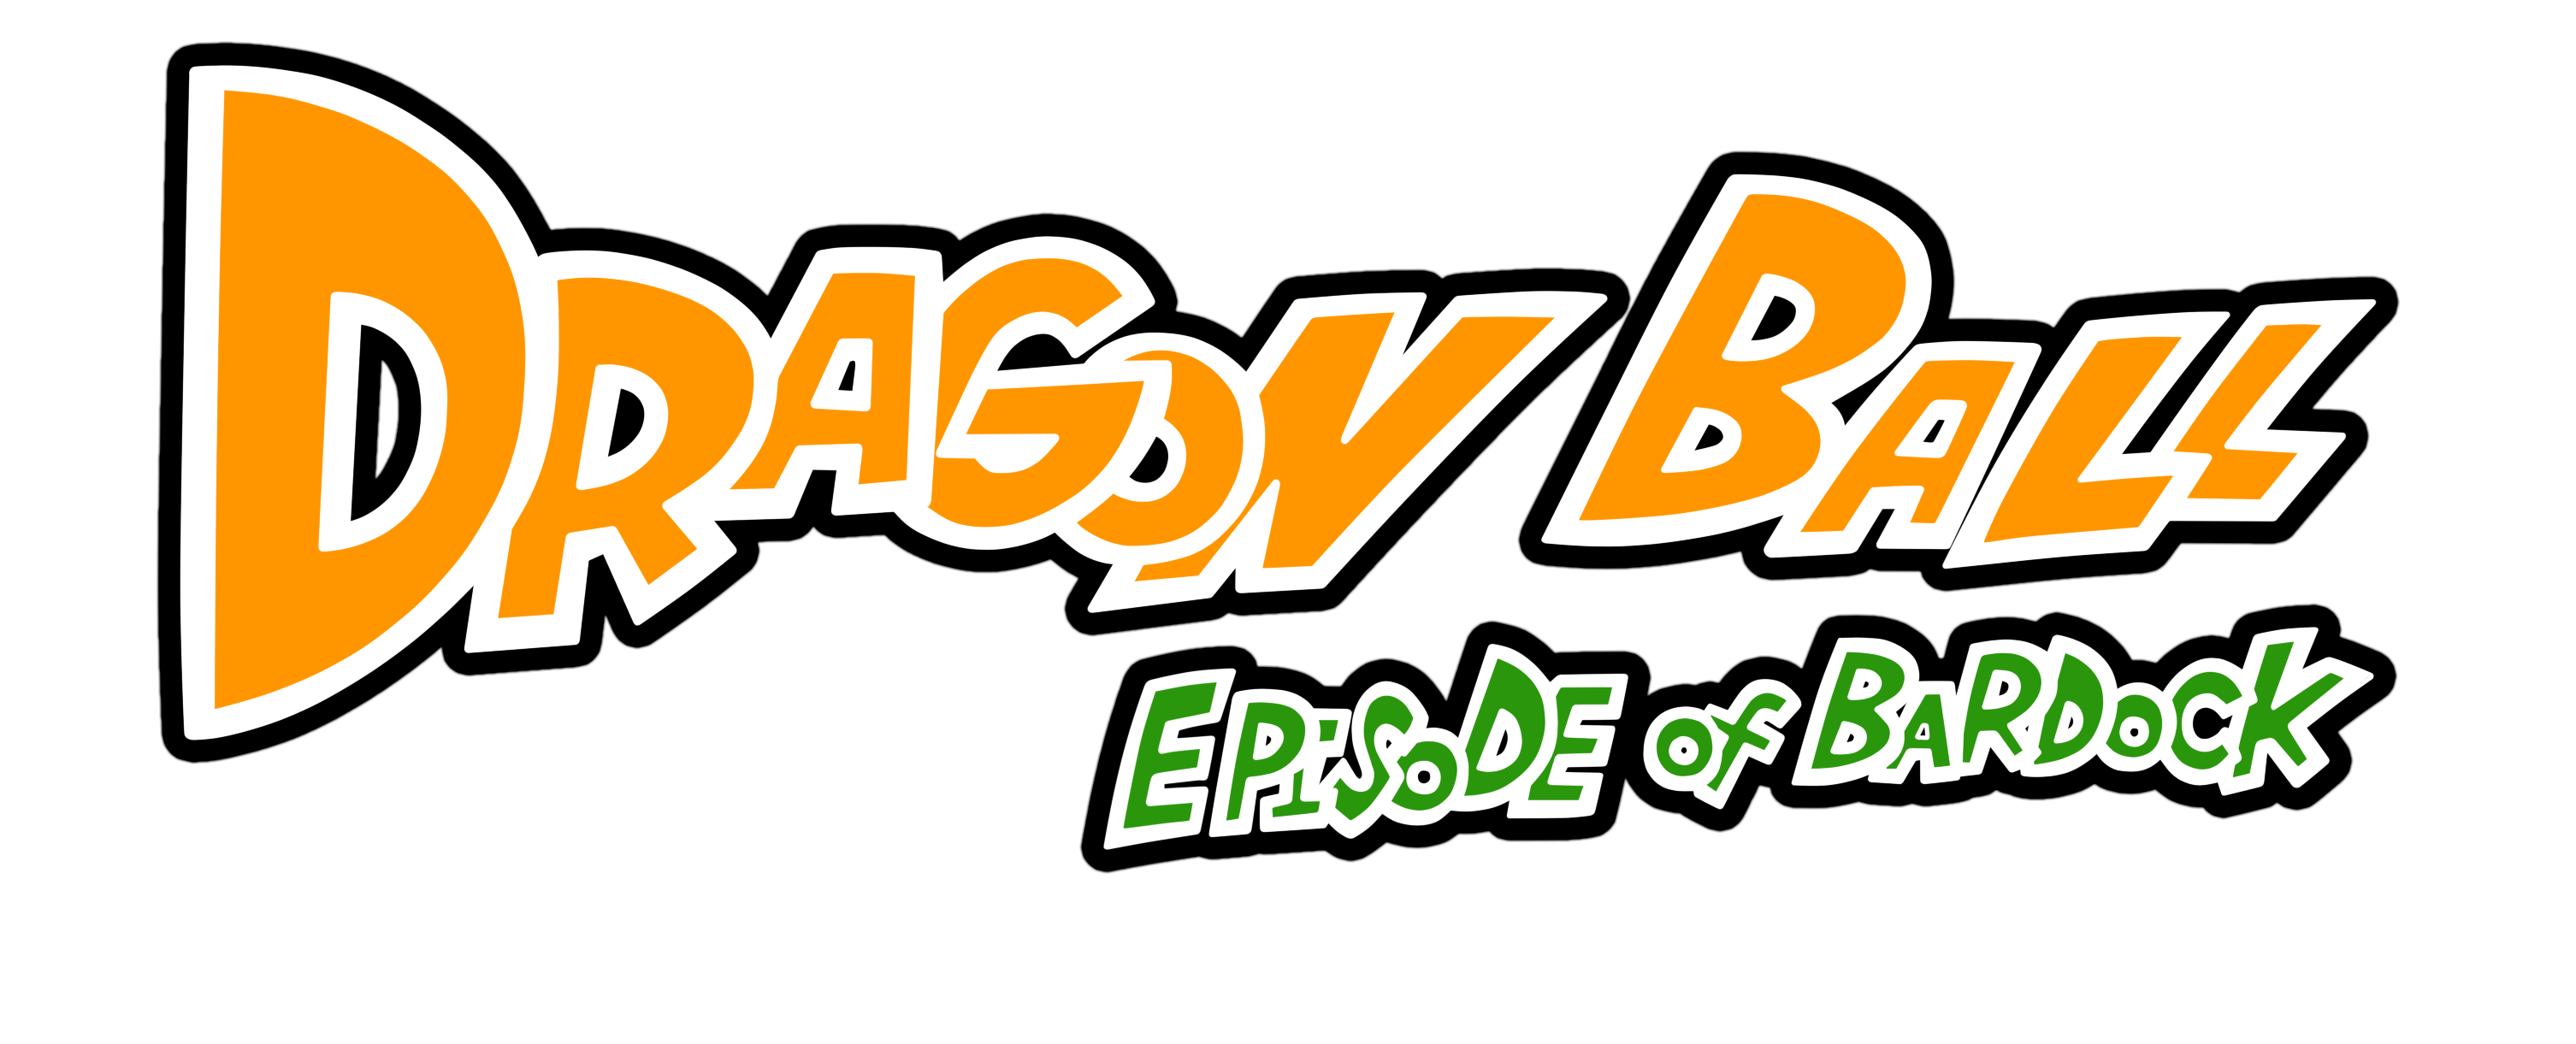 Dragon Ball Episode of Bardock by KinyoboTV on DeviantArt